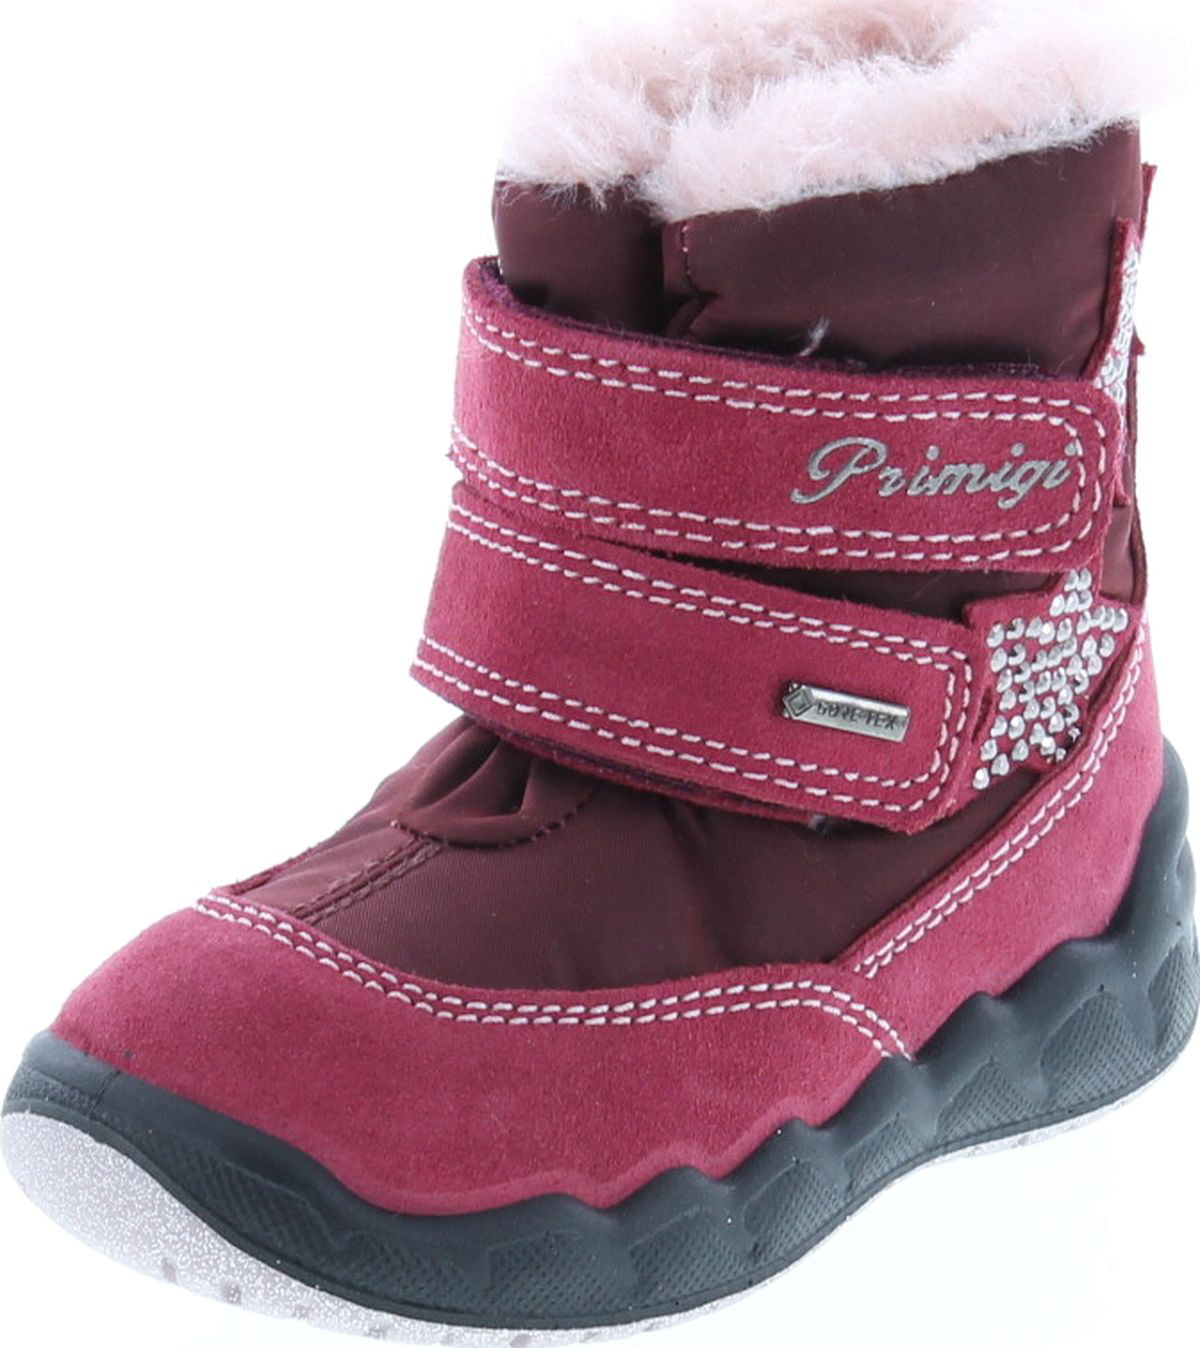 Margaret Mitchell Indføre symaskine Primigi Girls High Top Waterproof Warm Winter Snow Boots, Red, 20 -  Walmart.com